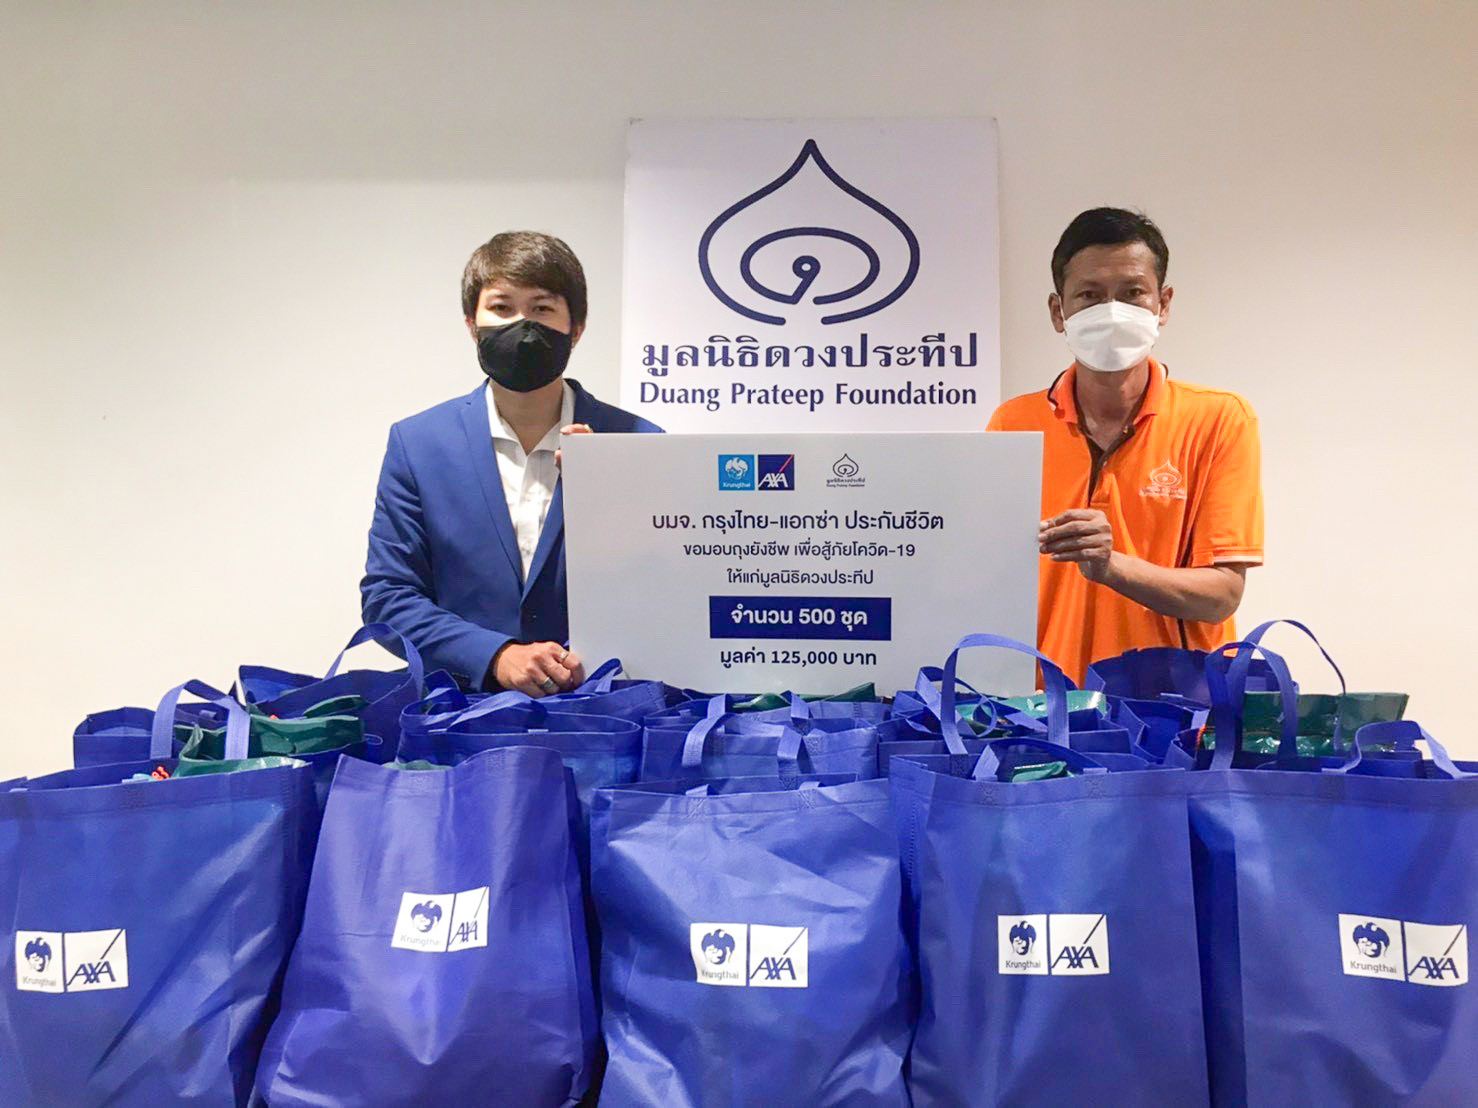 กรุงไทย–แอกซ่า ประกันชีวิต มอบถุงยังชีพ เพื่อช่วยเหลือวิกฤตโควิด-19 ให้แก่มูลนิธิดวงประทีป